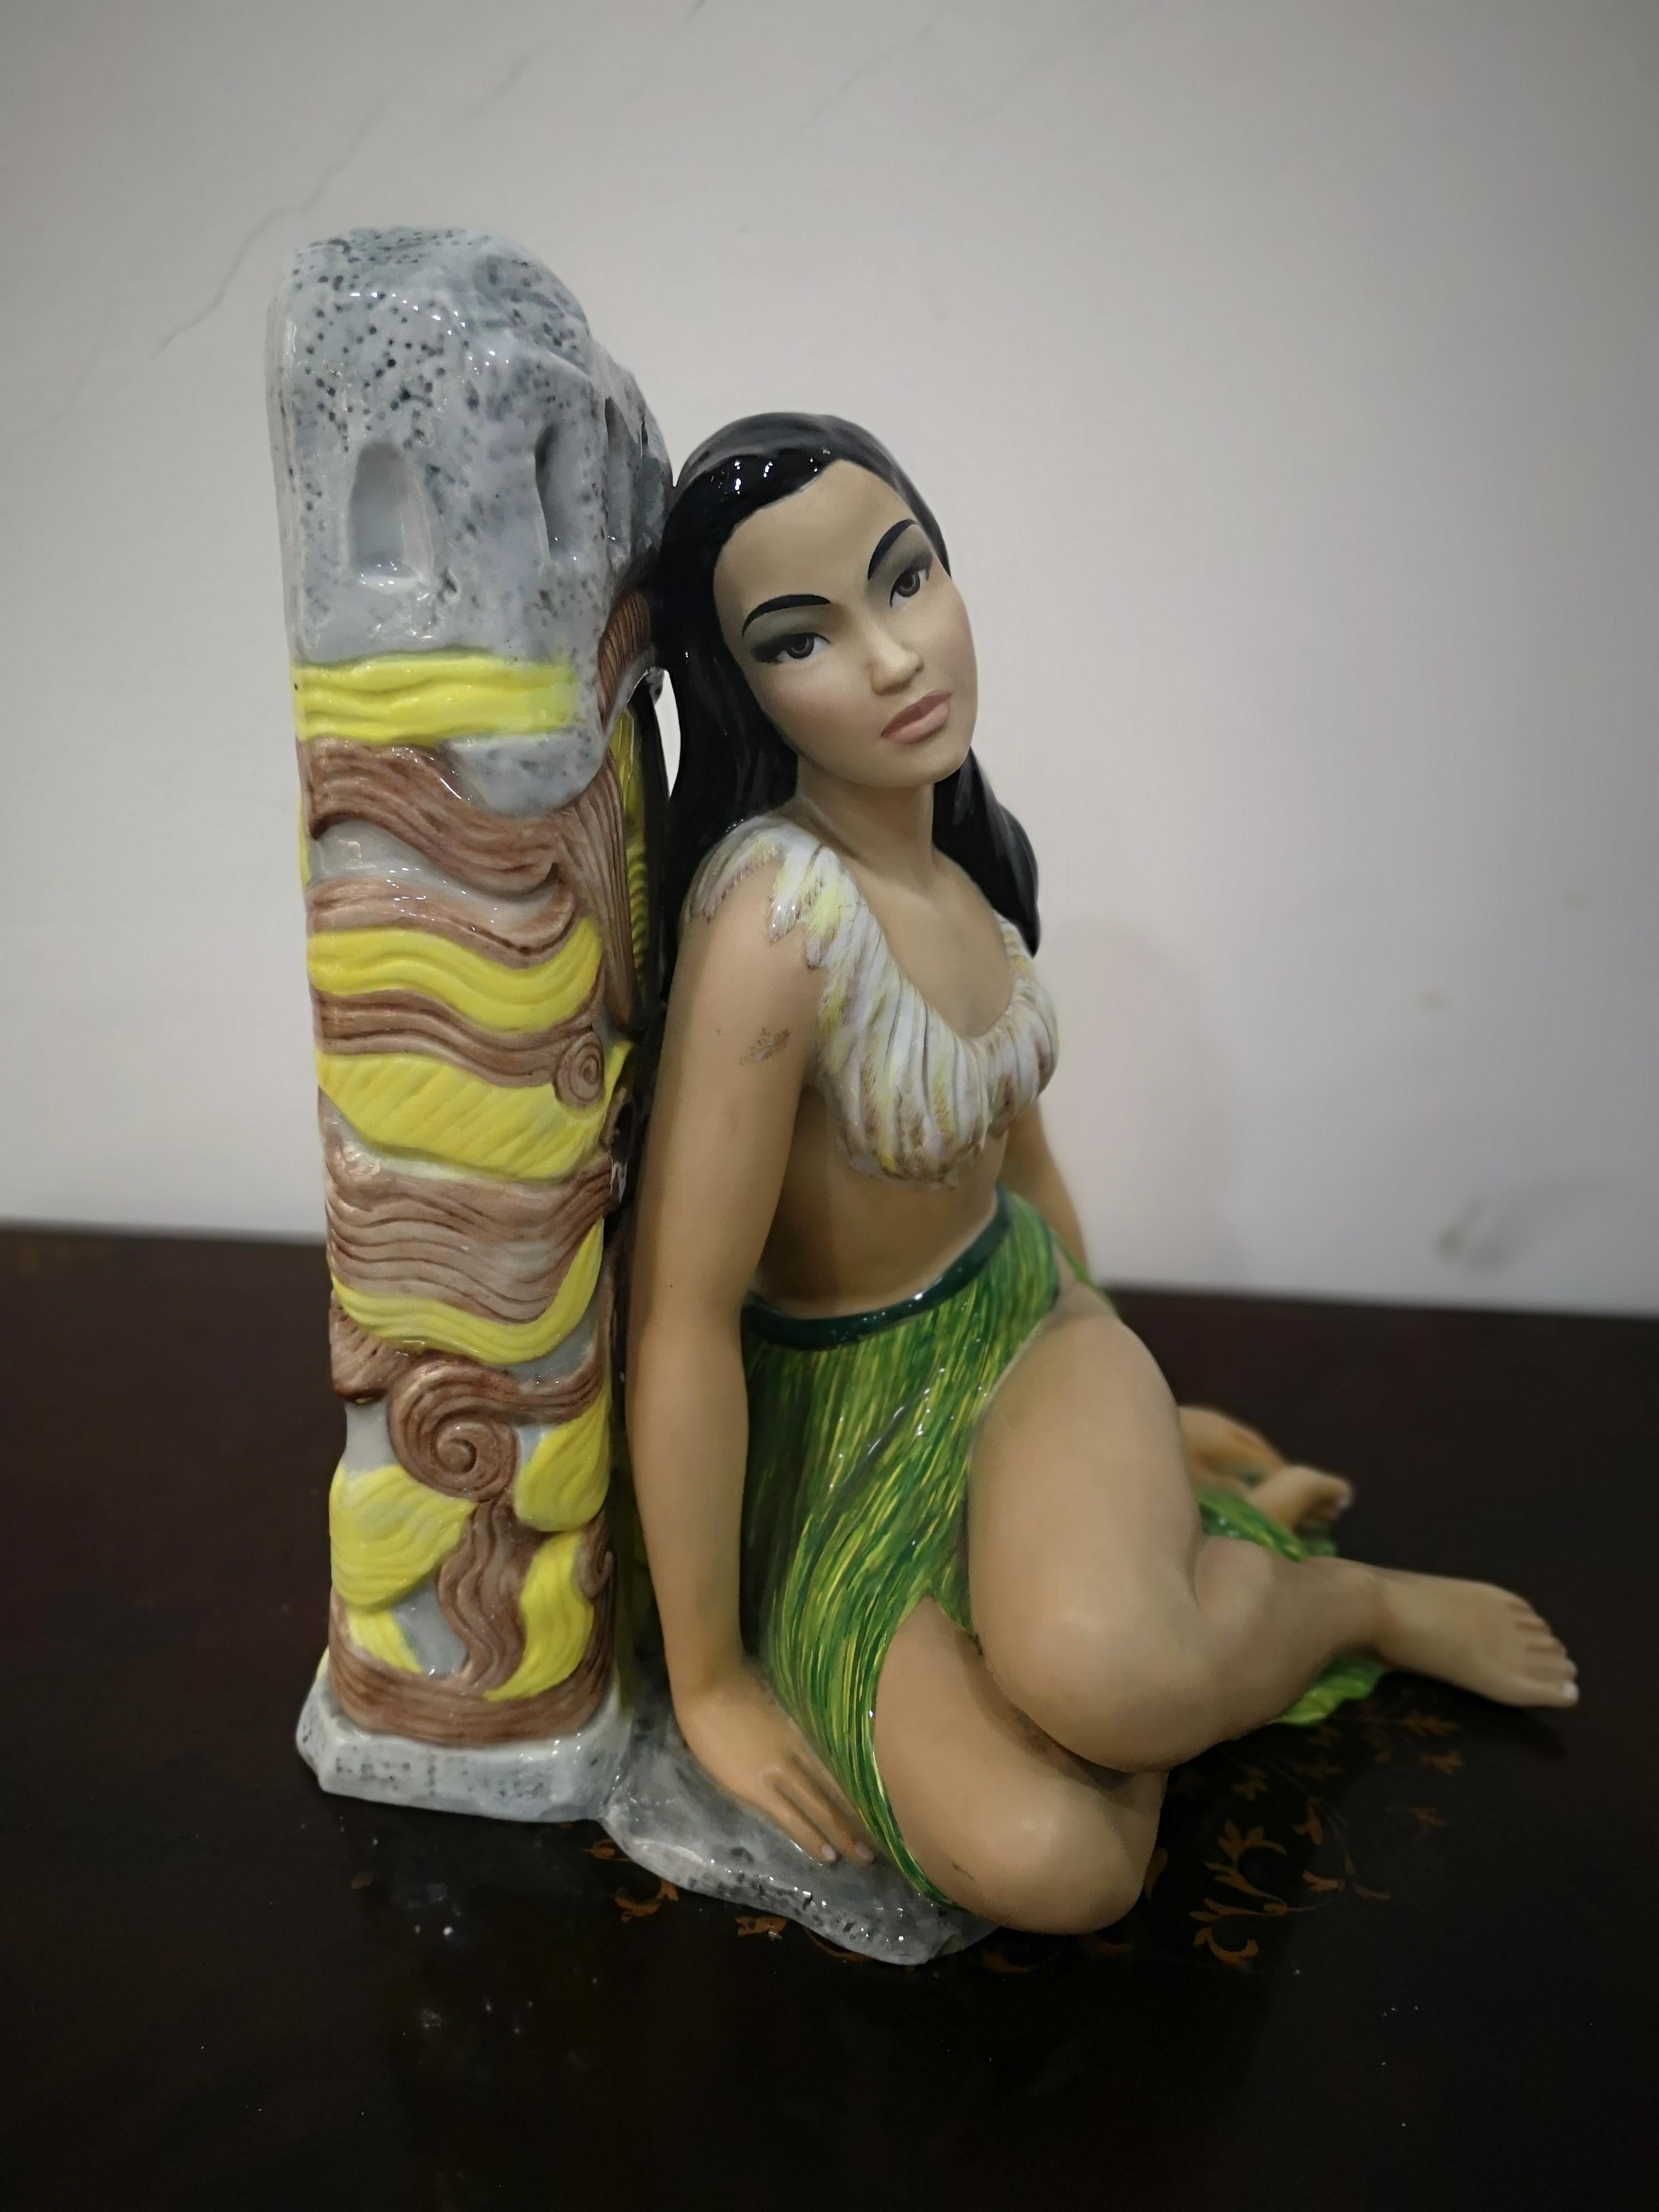 Belle céramique peinte à la main qui représente une jeune fille  Hawaïenne
Manifattura firmata Ronzan anni 50 in ottime condizioni
comme indiqué dans les photos qui illustrent la manifestation de grande qualité
dans le regard et dans la figure en